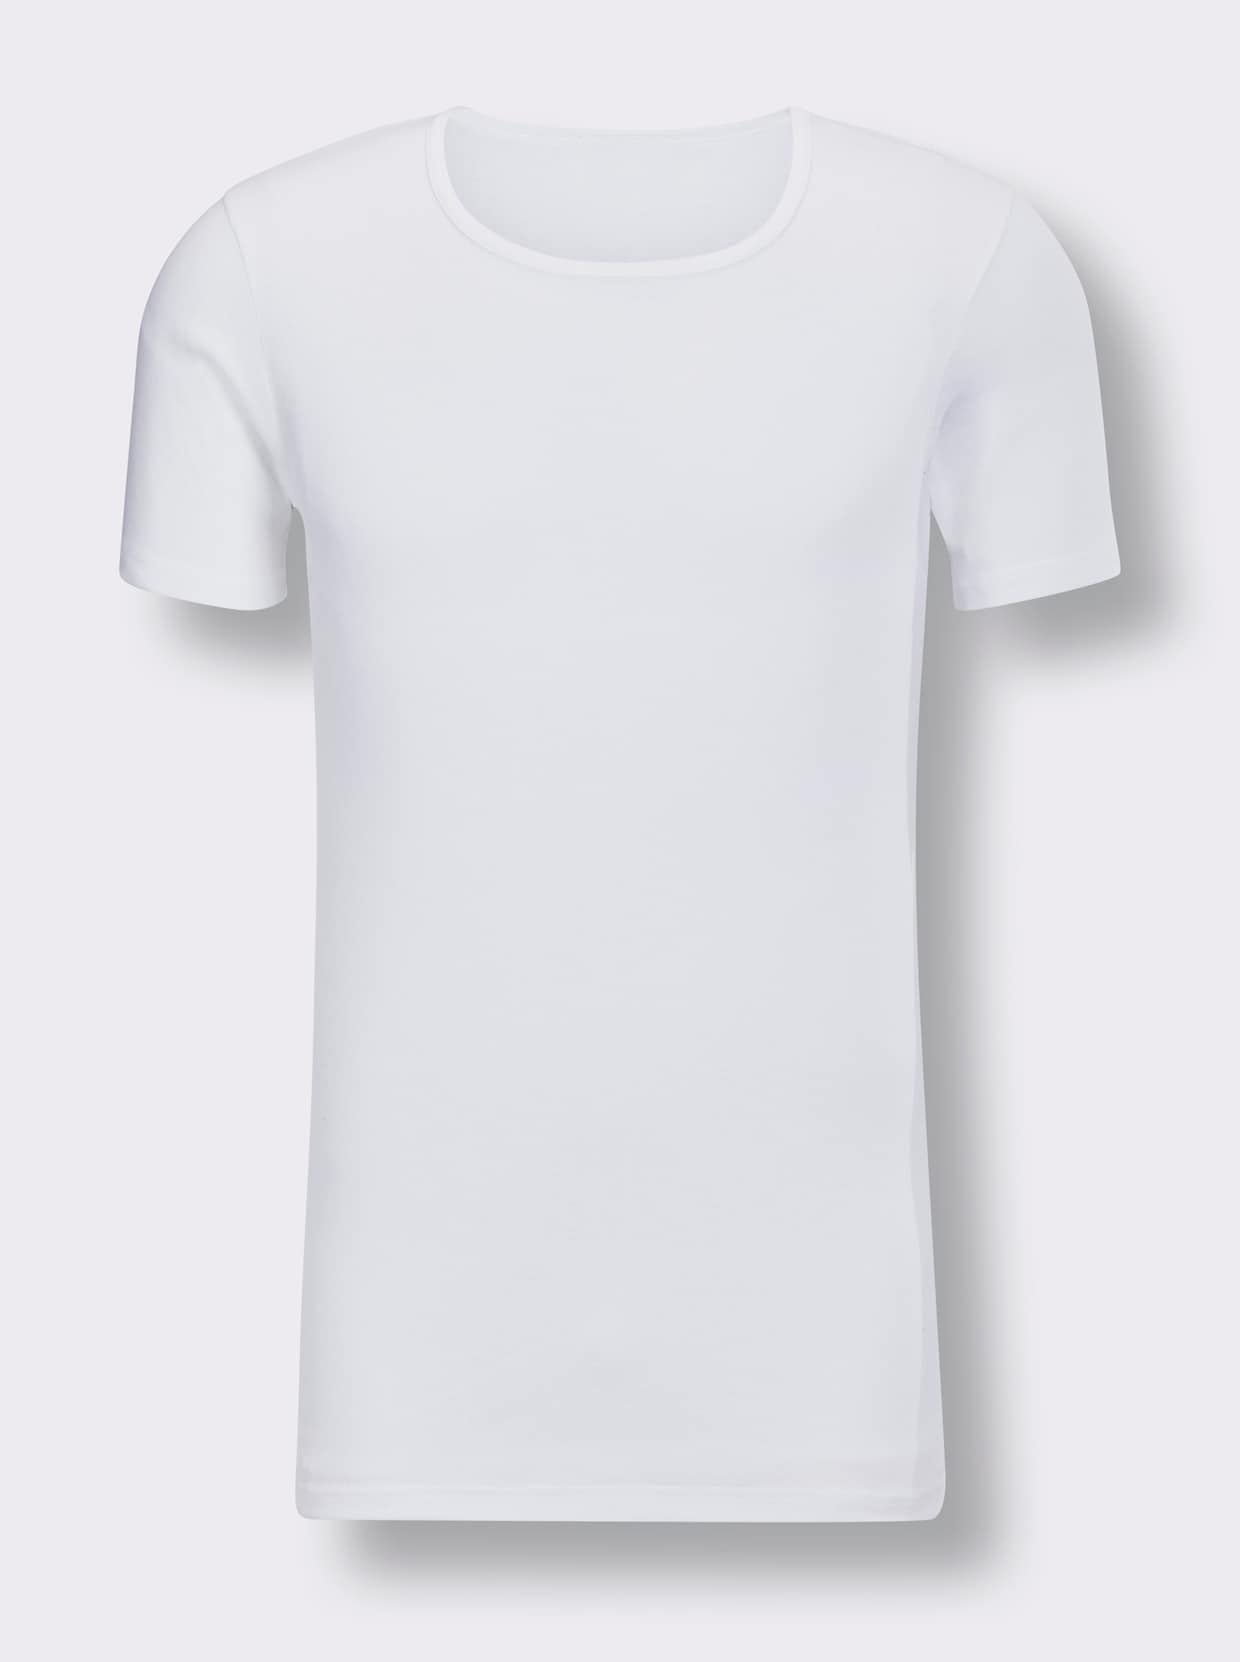 Kumpf Shirt - weiß